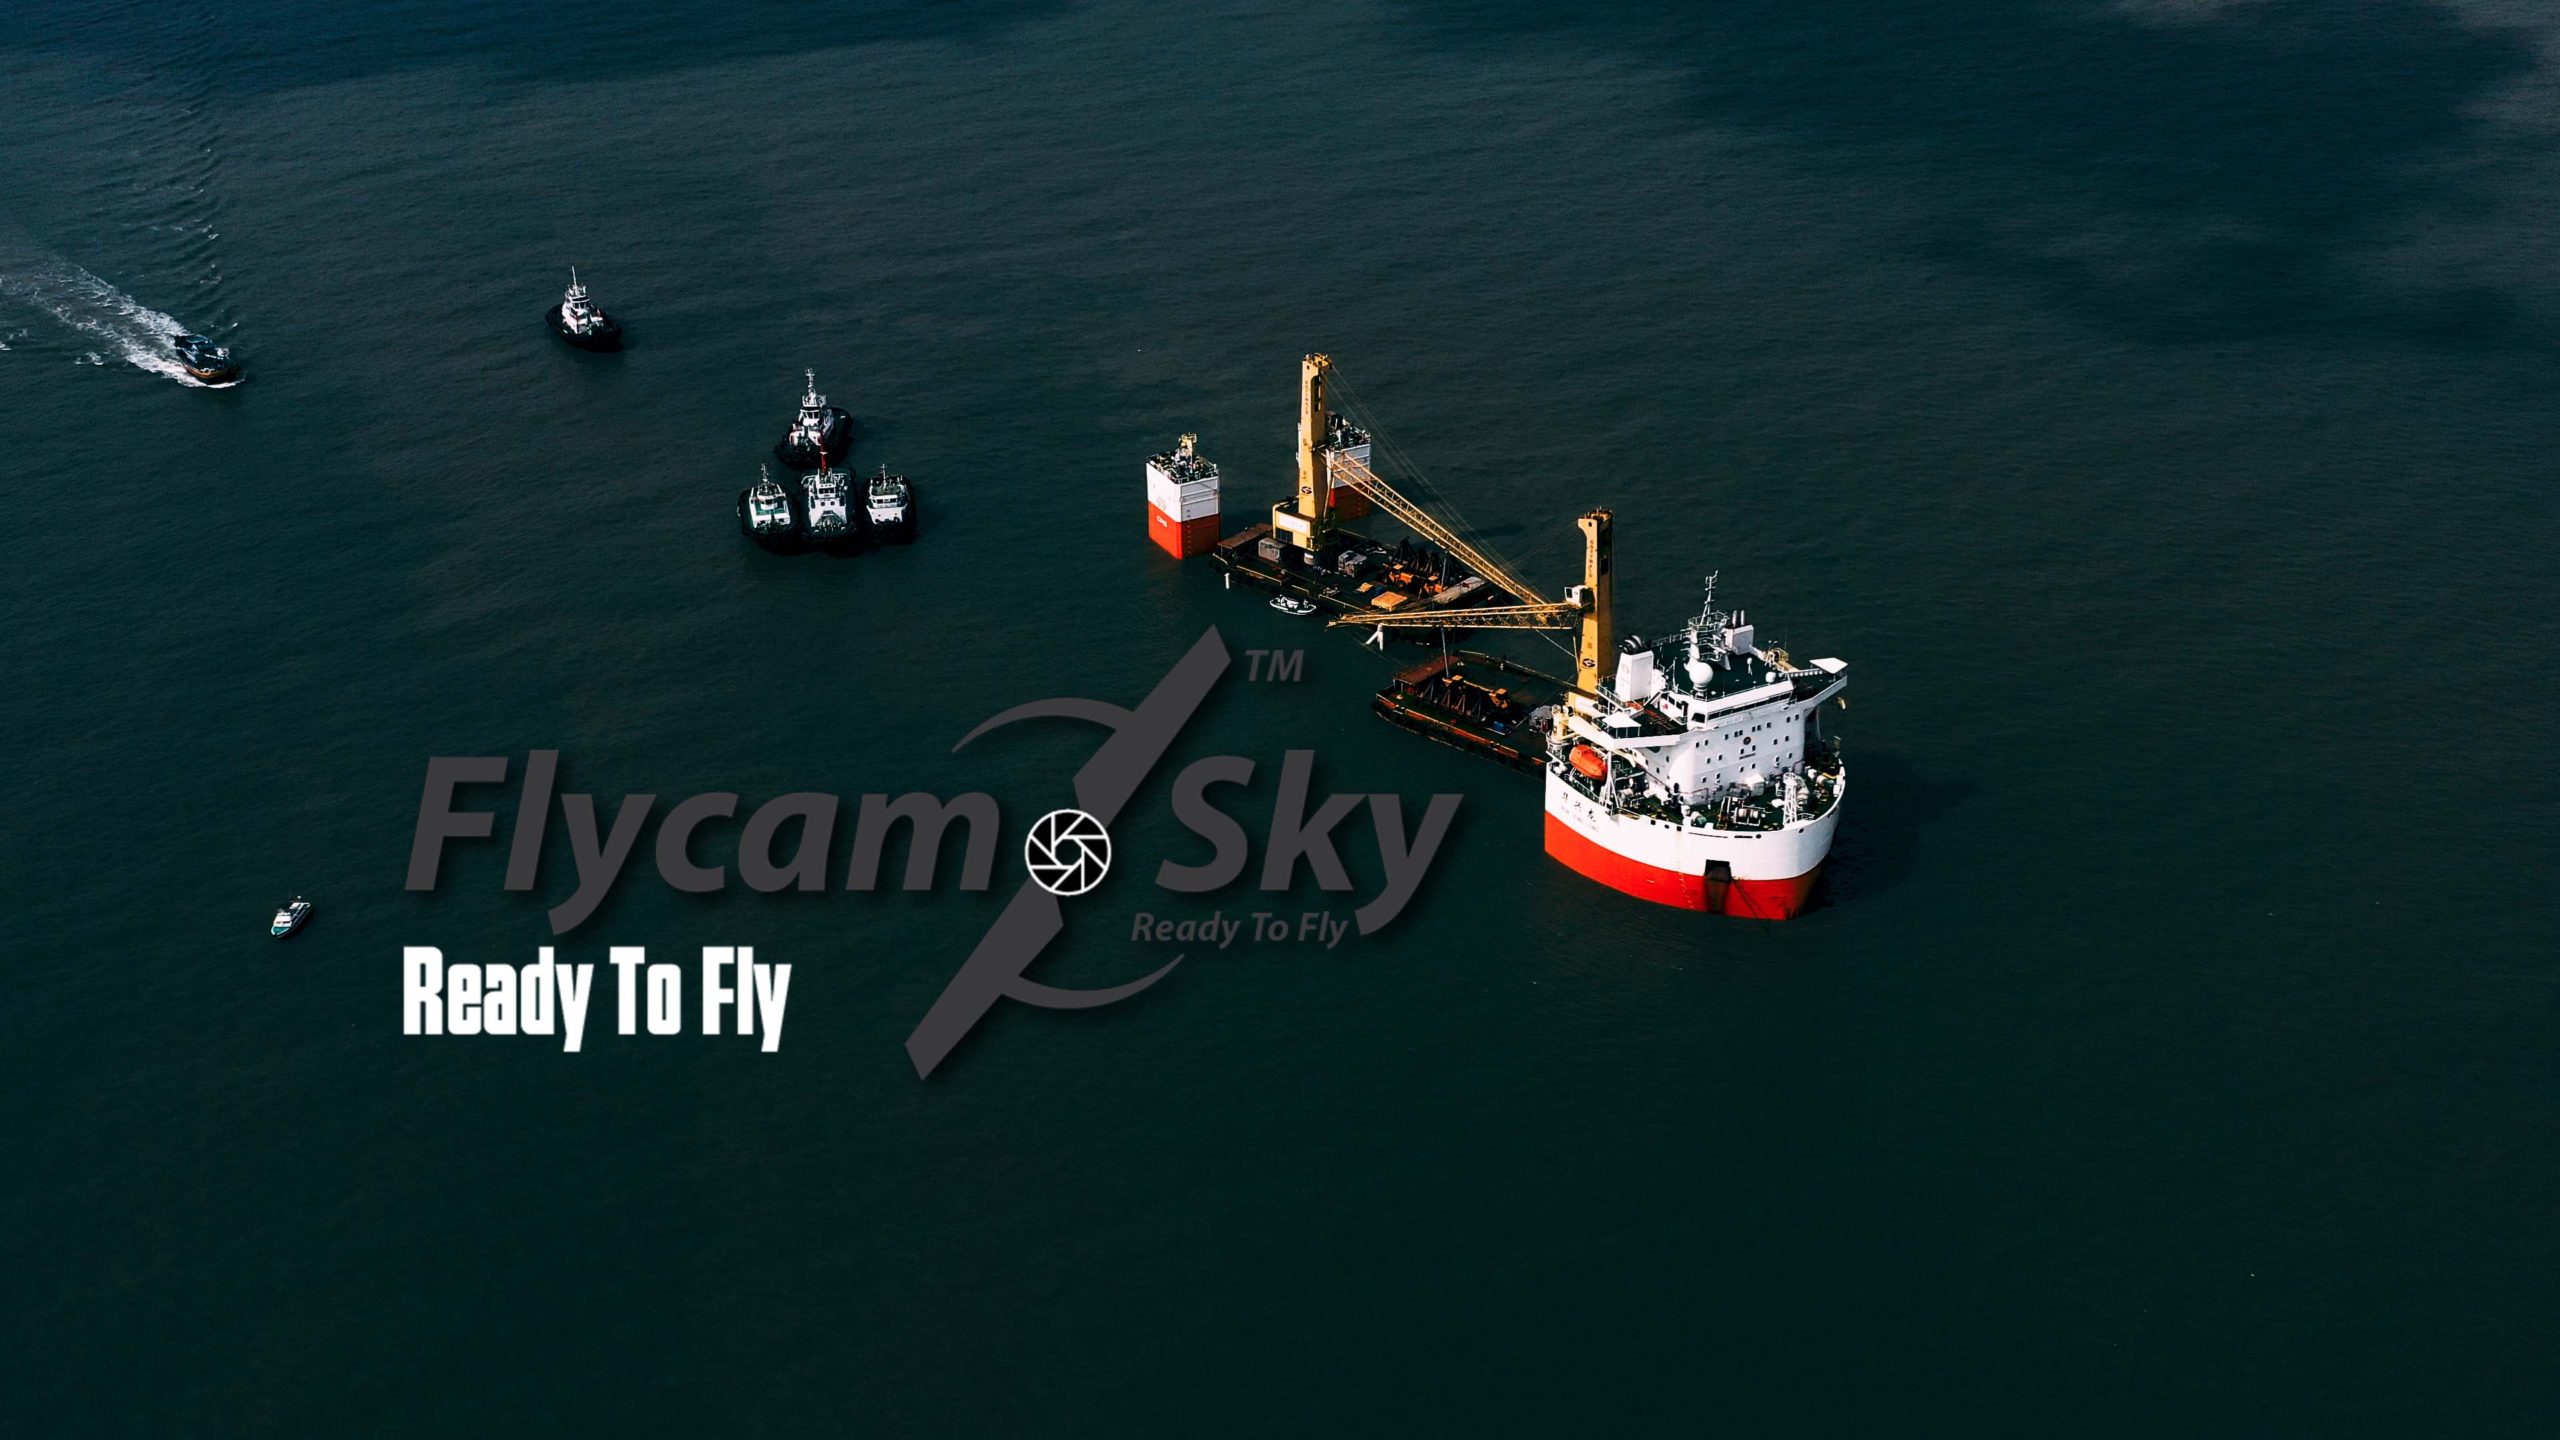 Flycam quay phim tiến trình bốc dỡ hàng hóa tàu biển